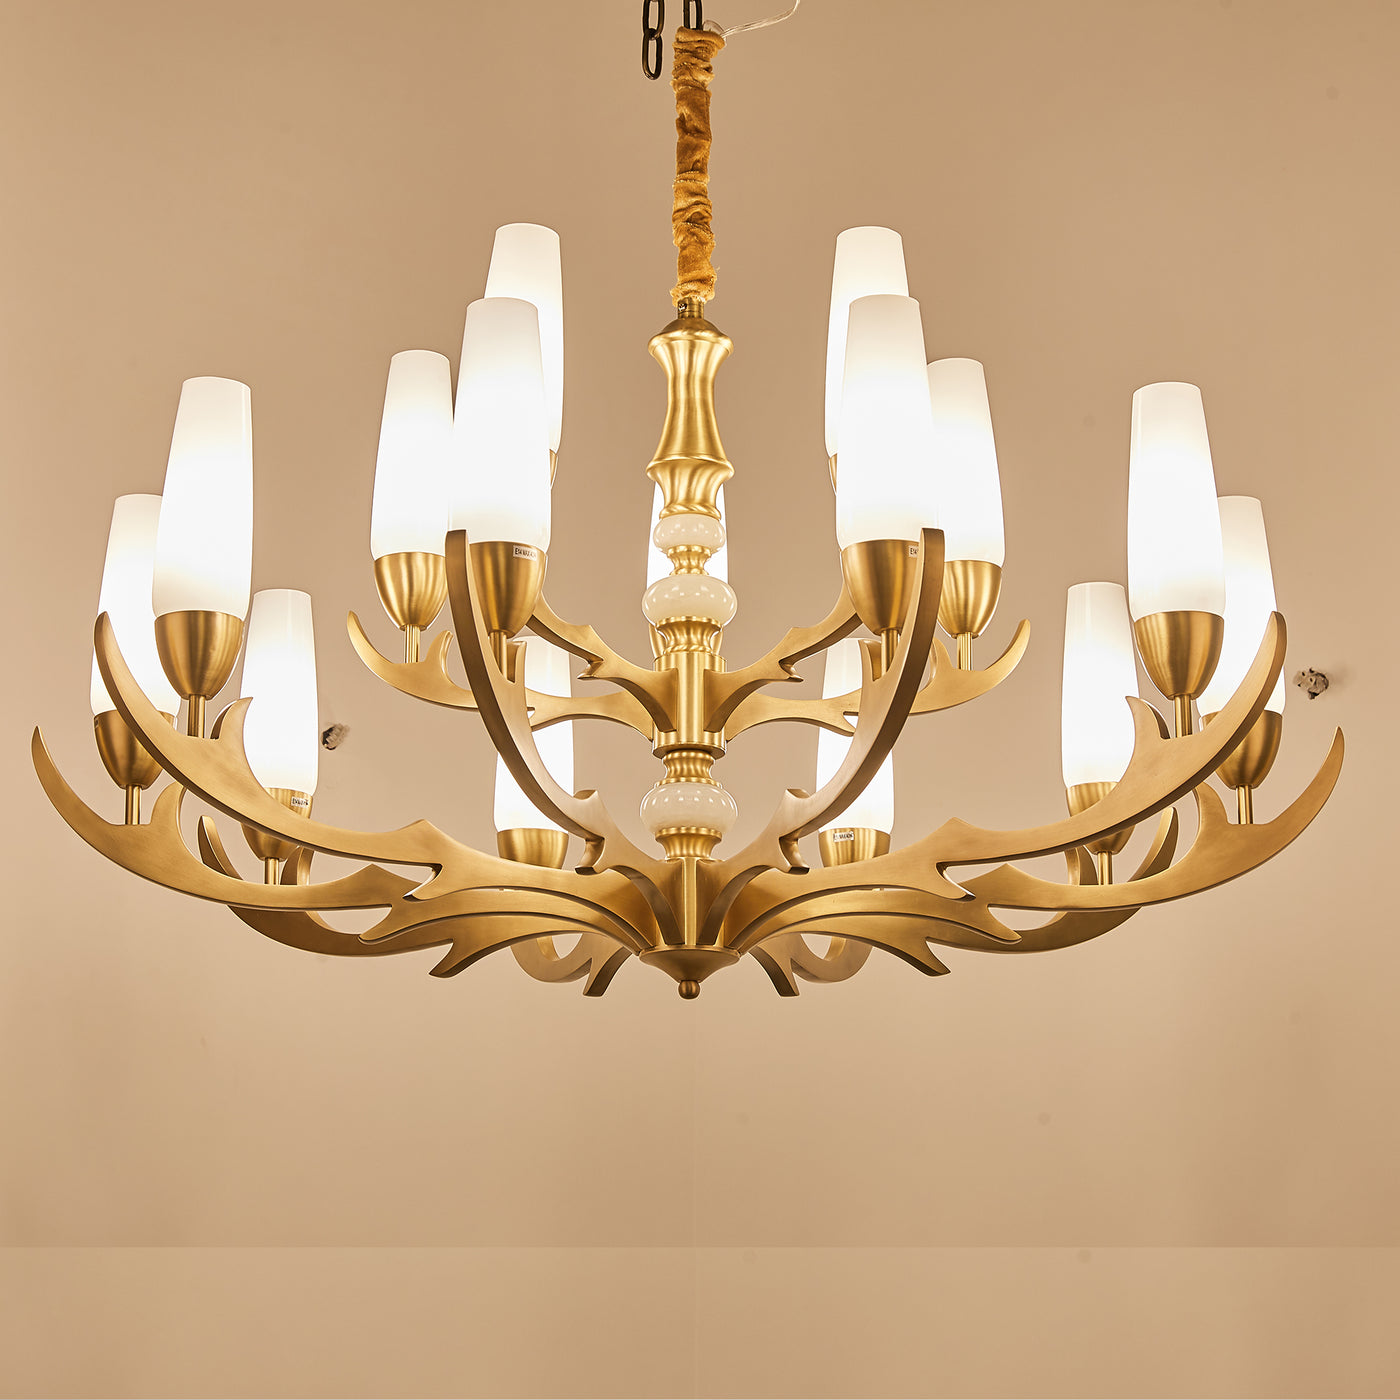 Creative double layer golden chandelier